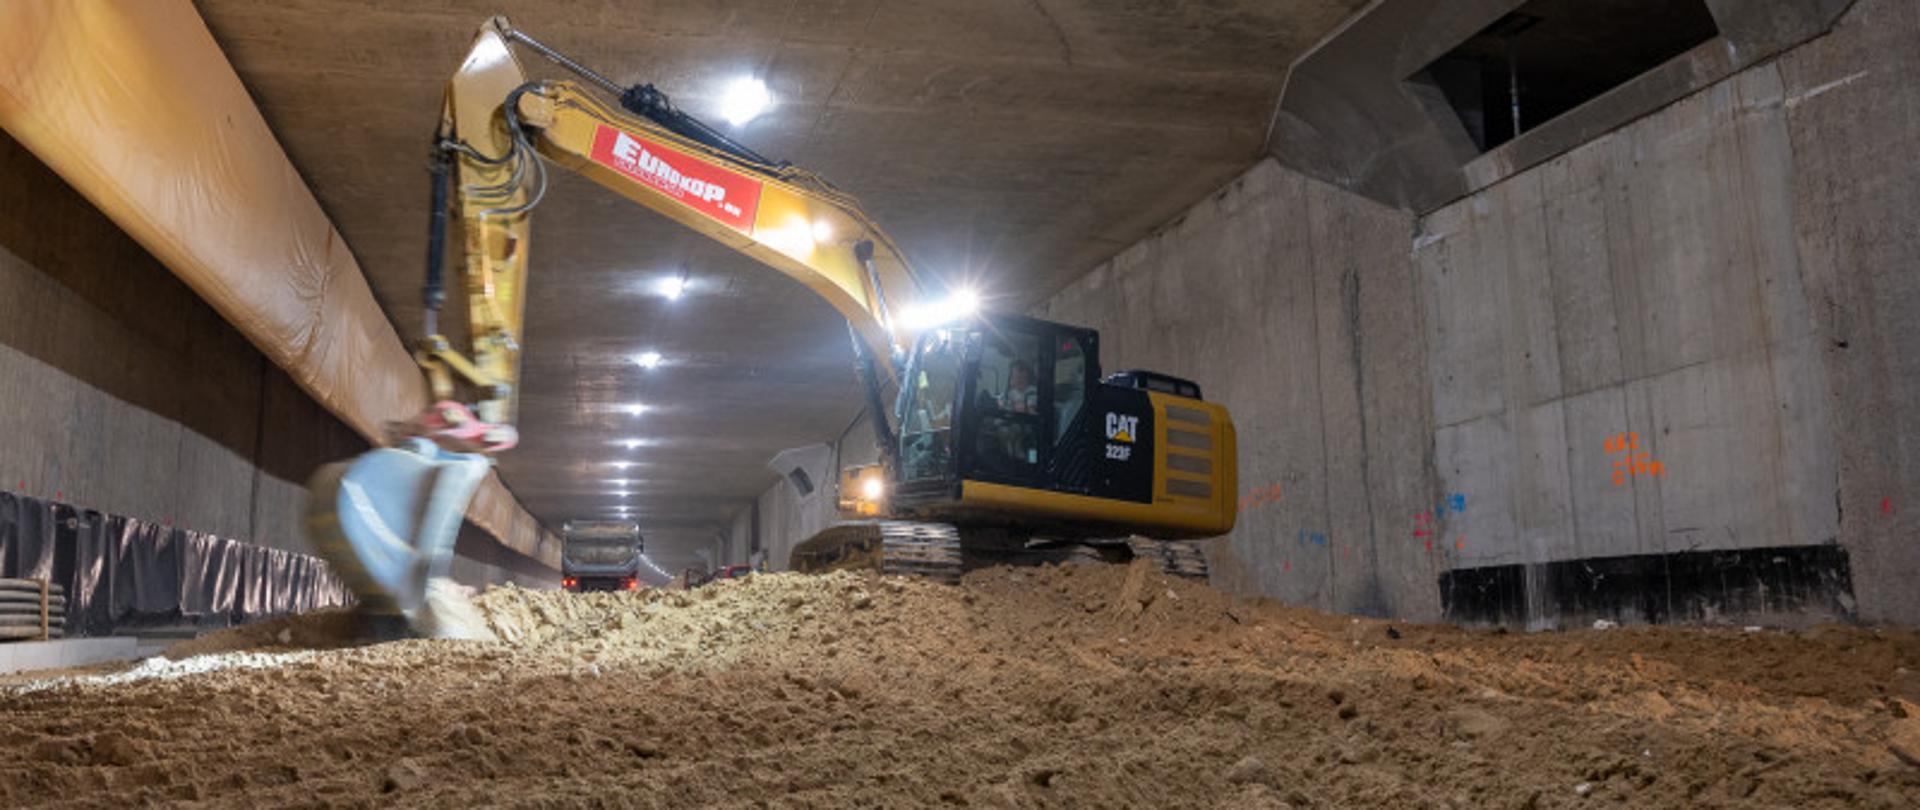 S2 tunel na Południowej Obwodnicy Warszawy, koparka wybiera grunt w tunelu